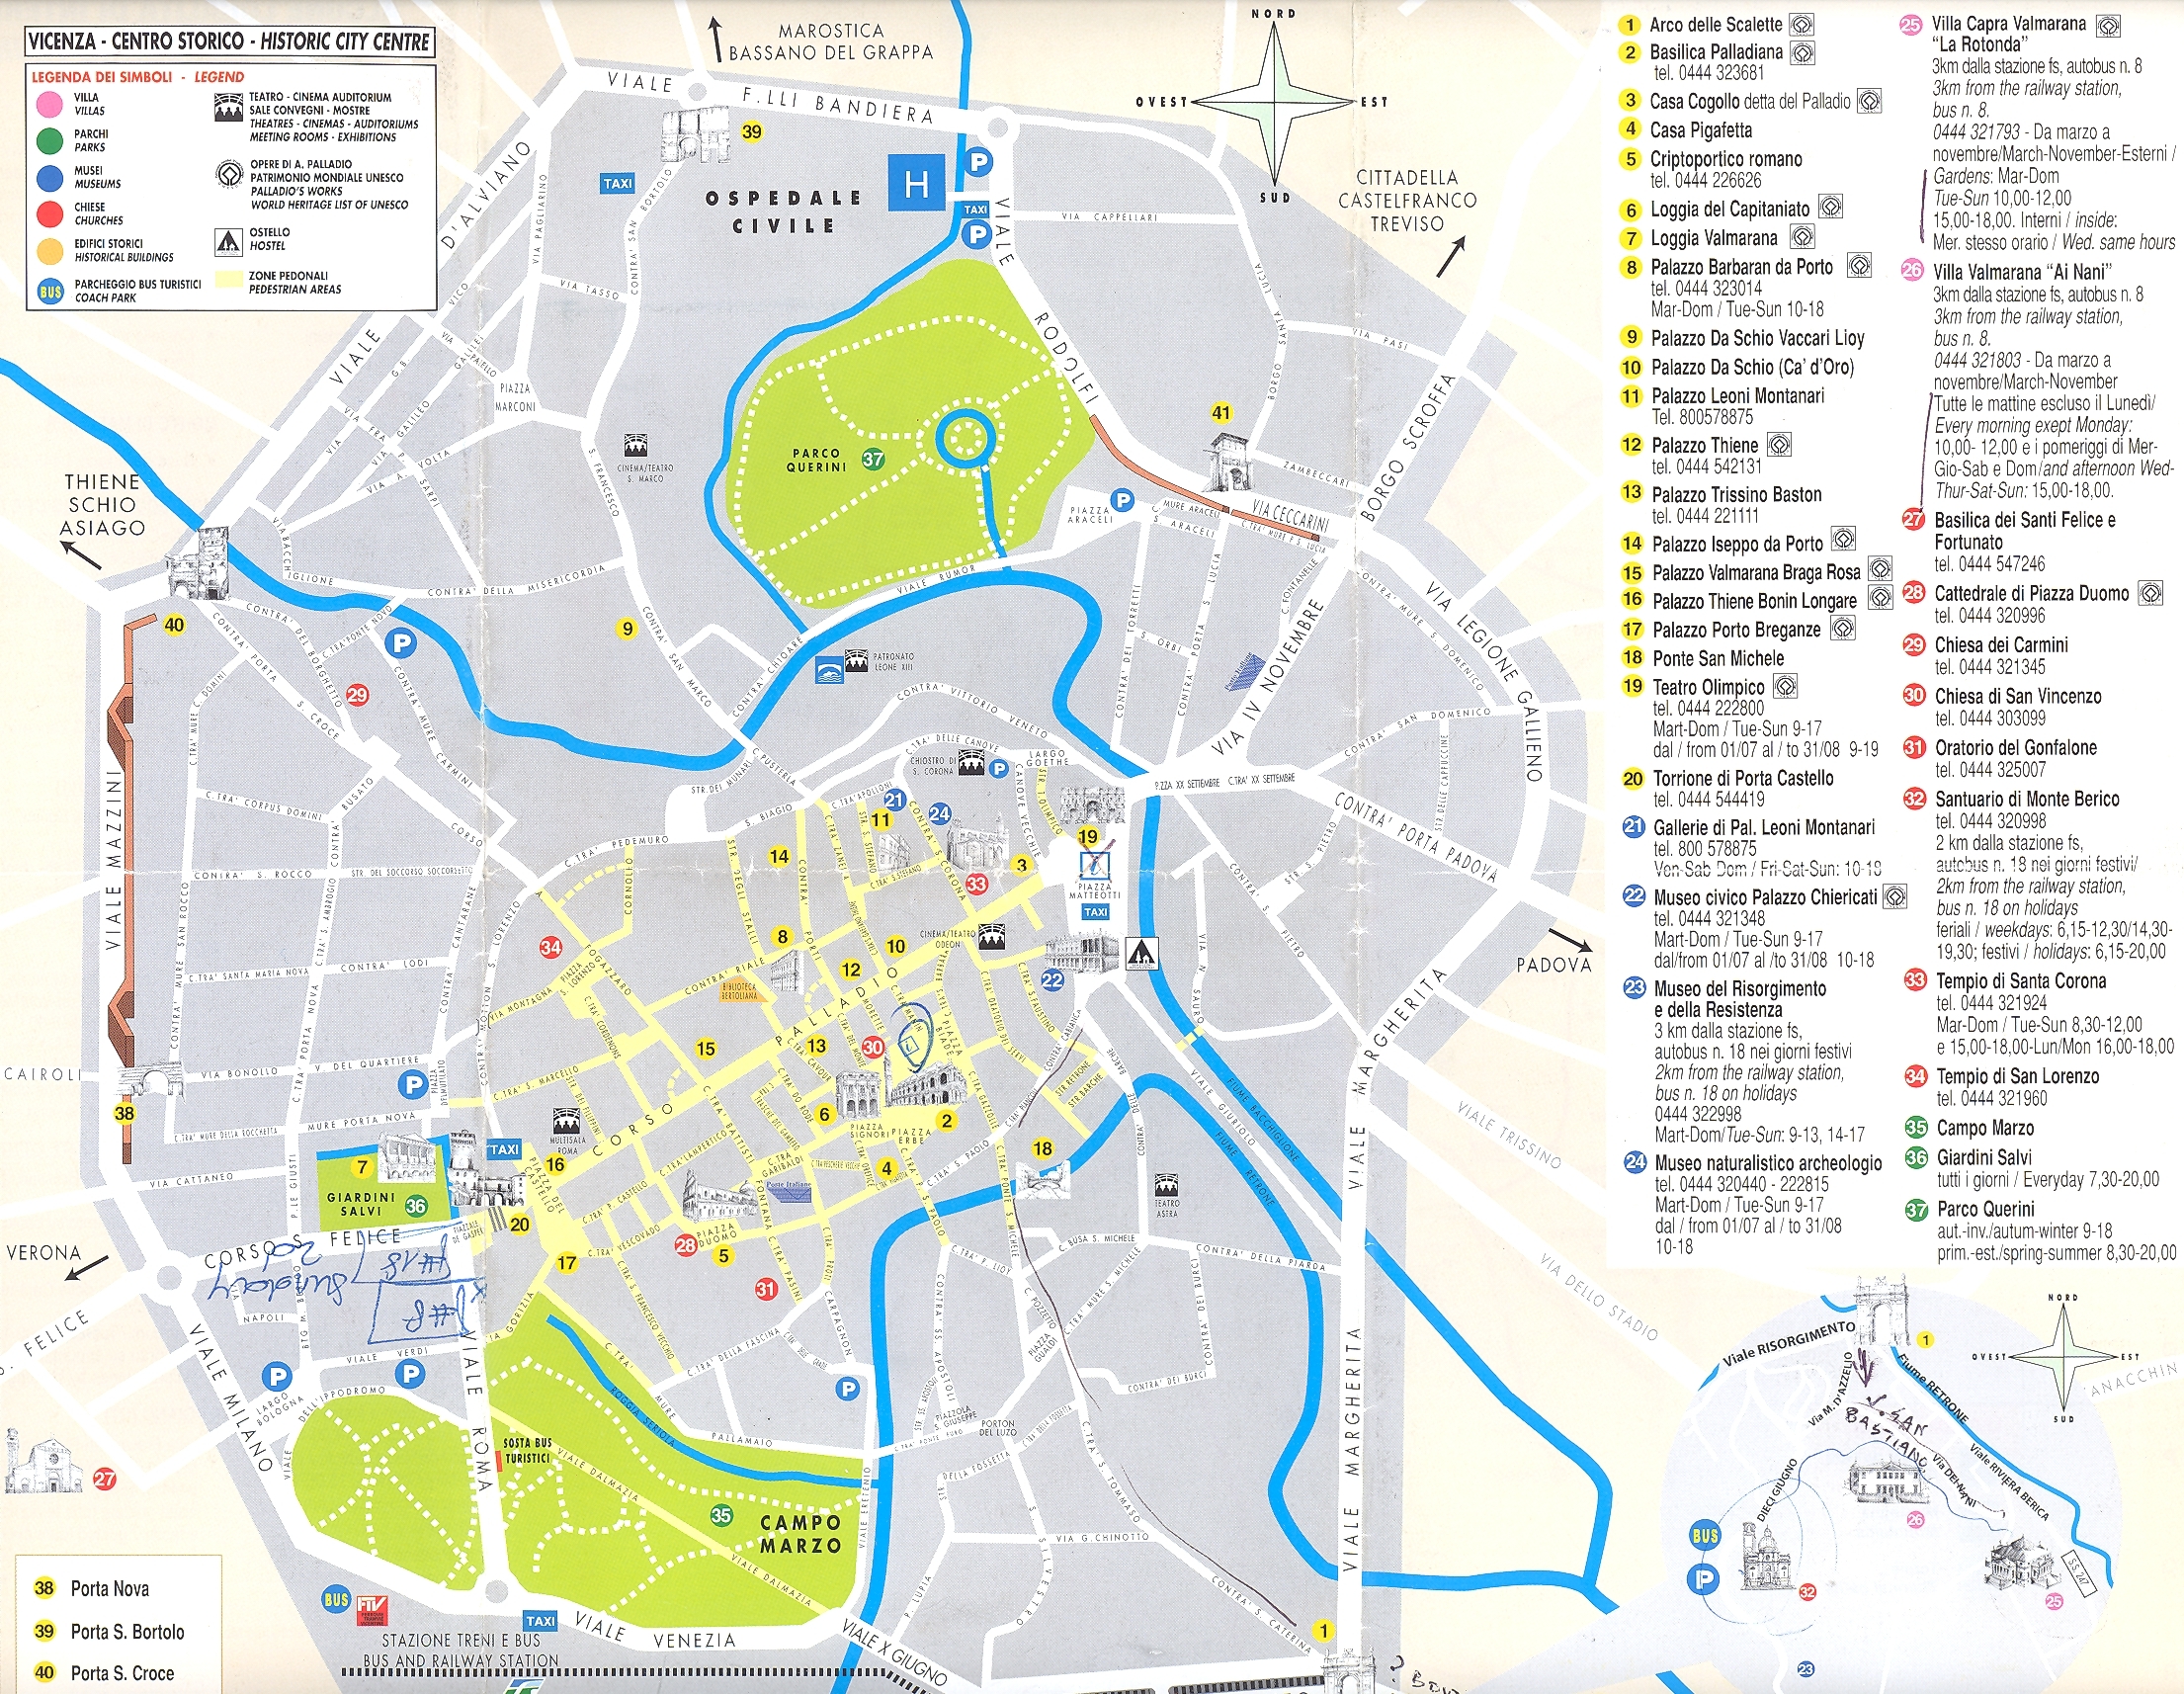 Виченца (Vicenza), регион Венето, Италия - достопримечательности, подробная карта города